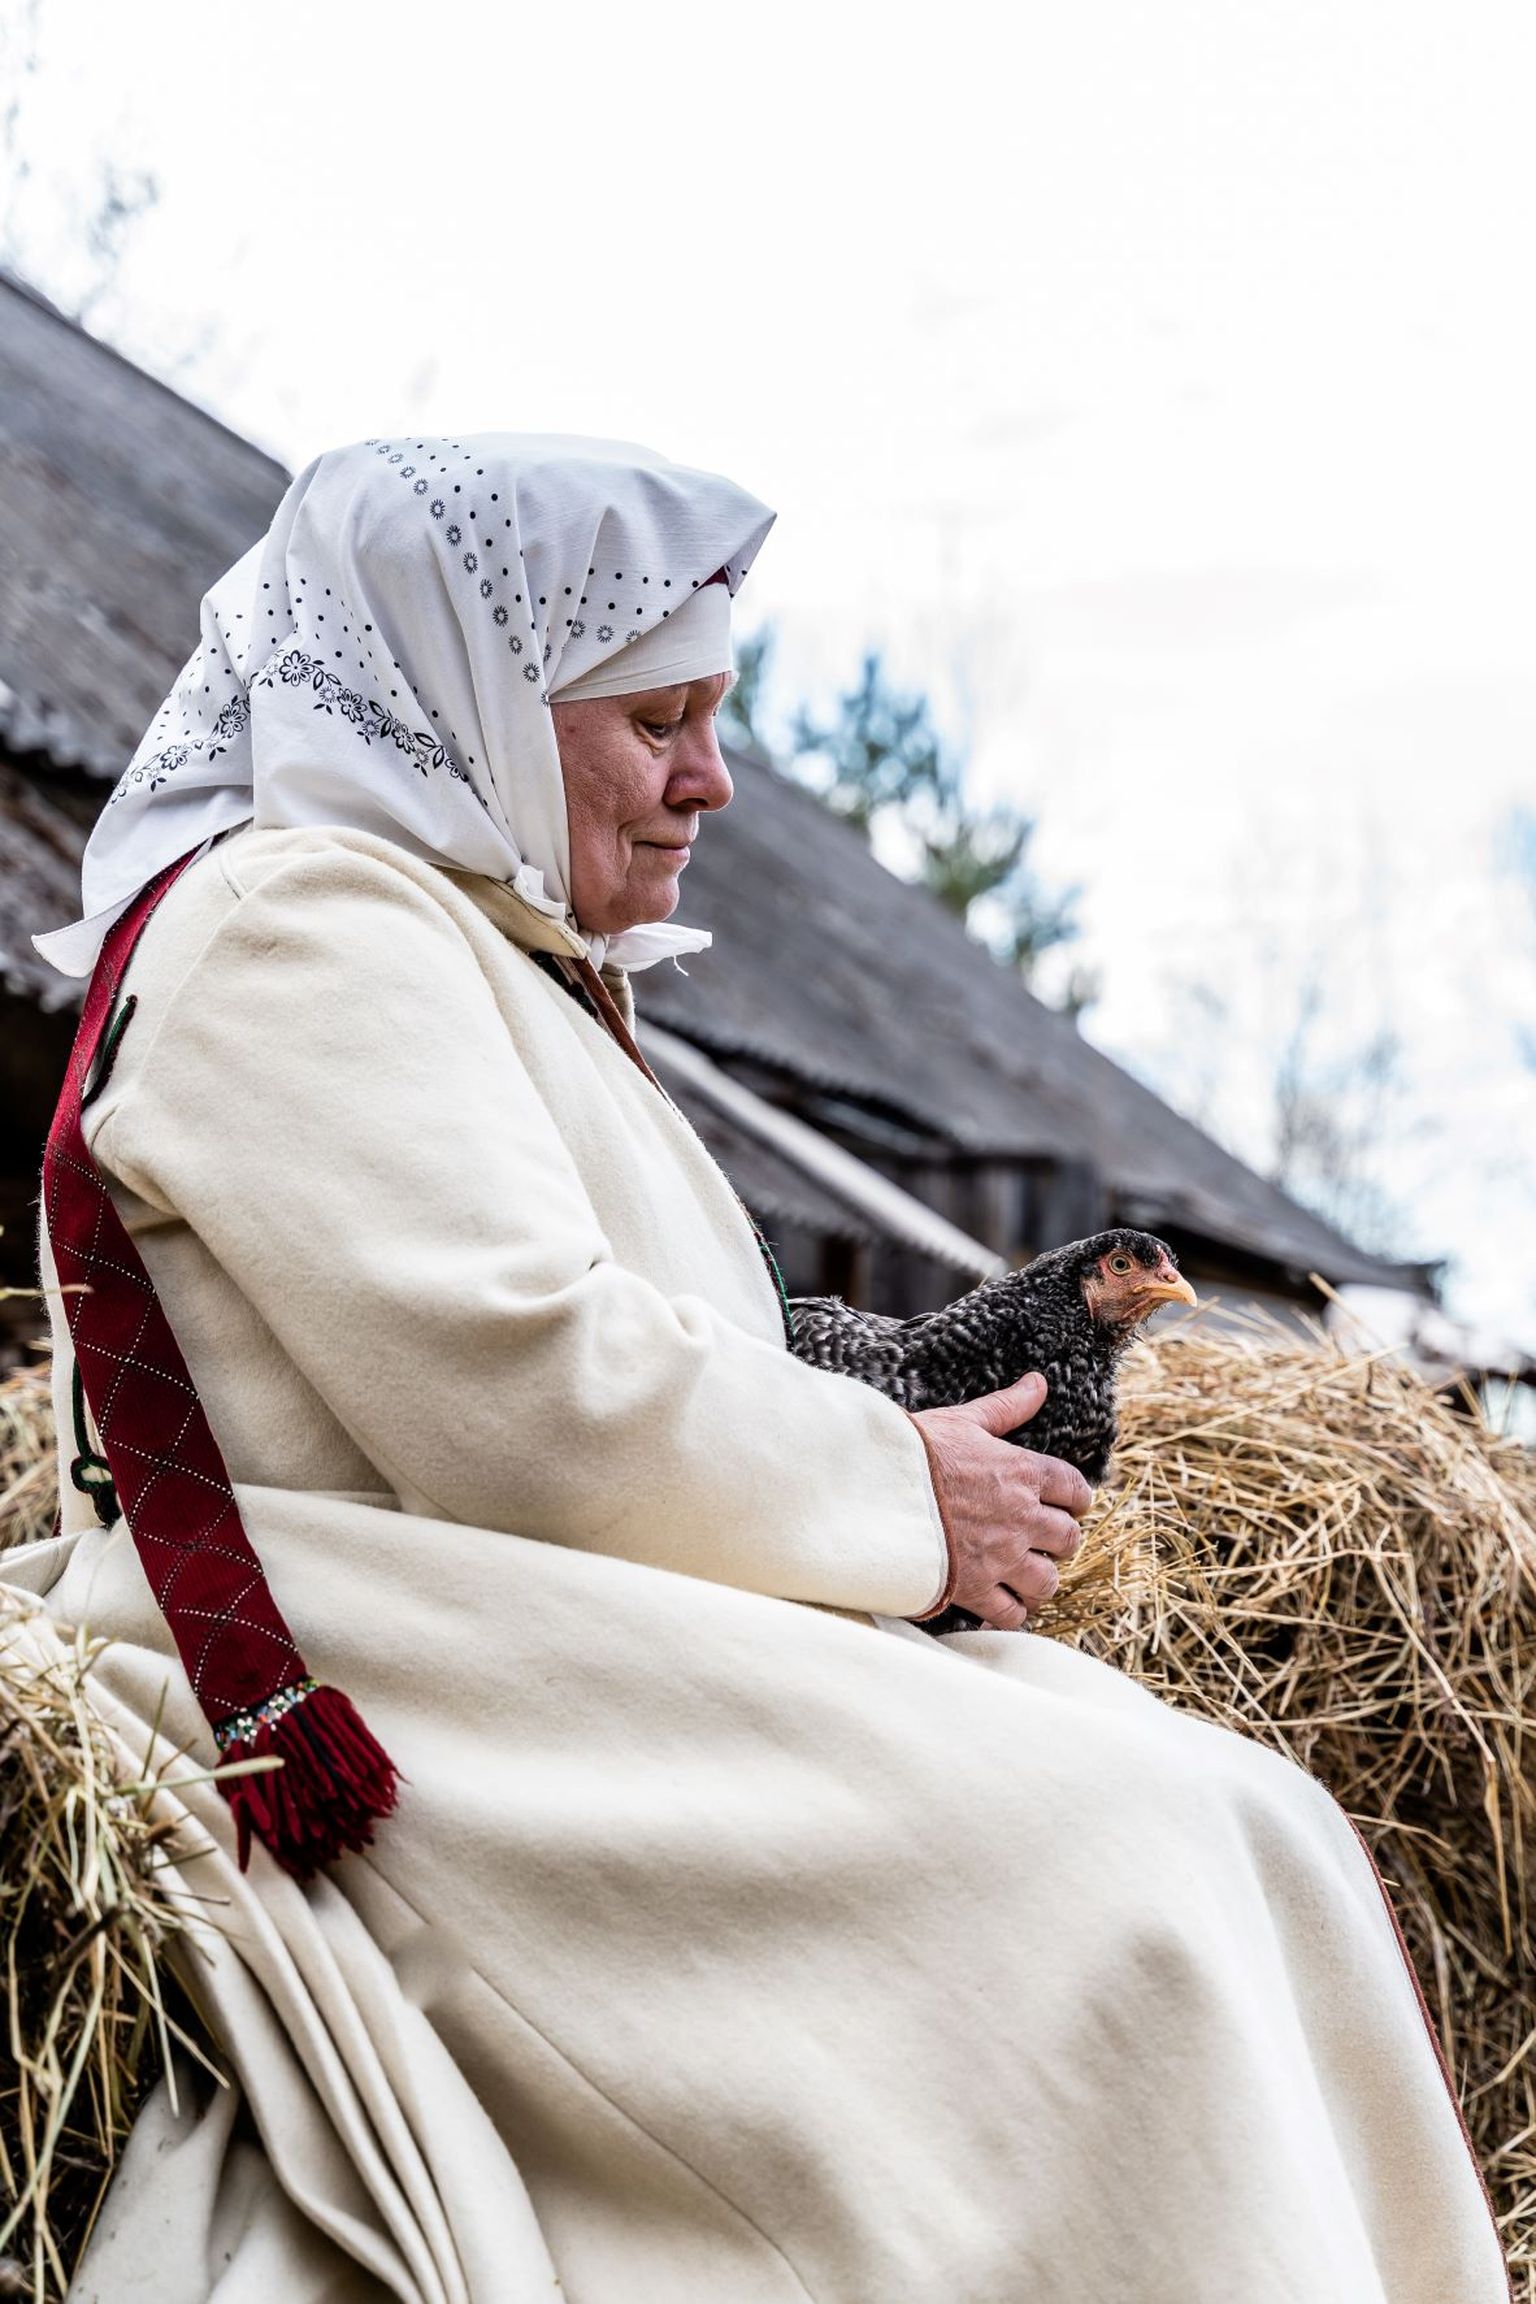 Munade ja linnu tähendust seto kultuuris aitab avada Obinitsa muuseumi giid ja pärandihoidja sootska Õie Sarv.